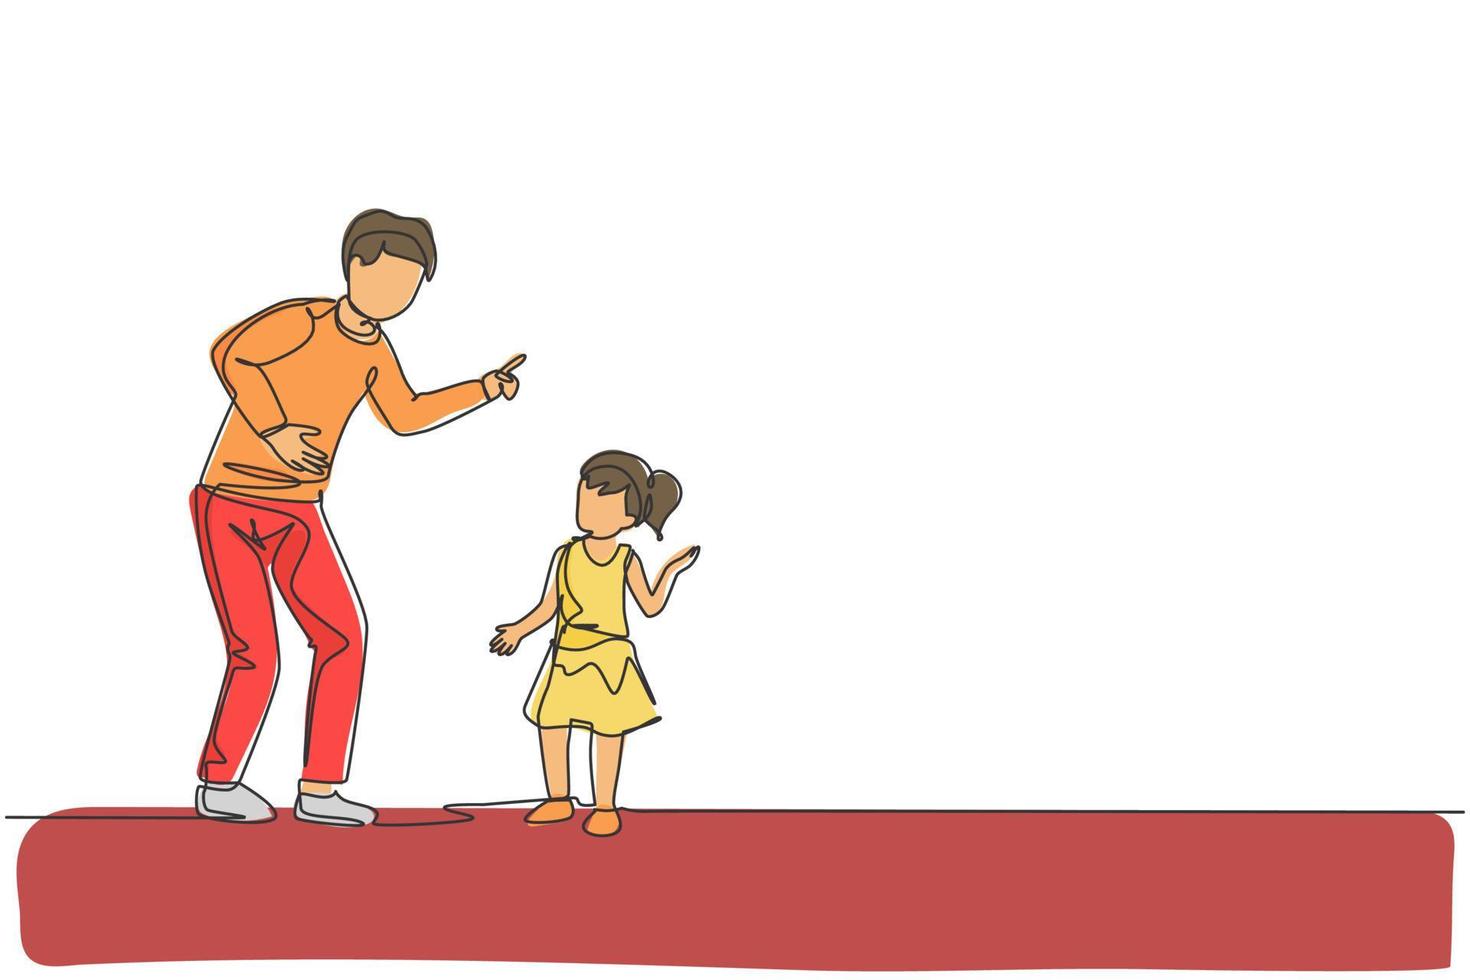 un unico disegno a tratteggio del giovane papà che dà un buon consiglio a sua figlia a casa illustrazione grafica vettoriale. concetto di comunicazione. genitorialità felice della famiglia. design moderno a linea continua vettore